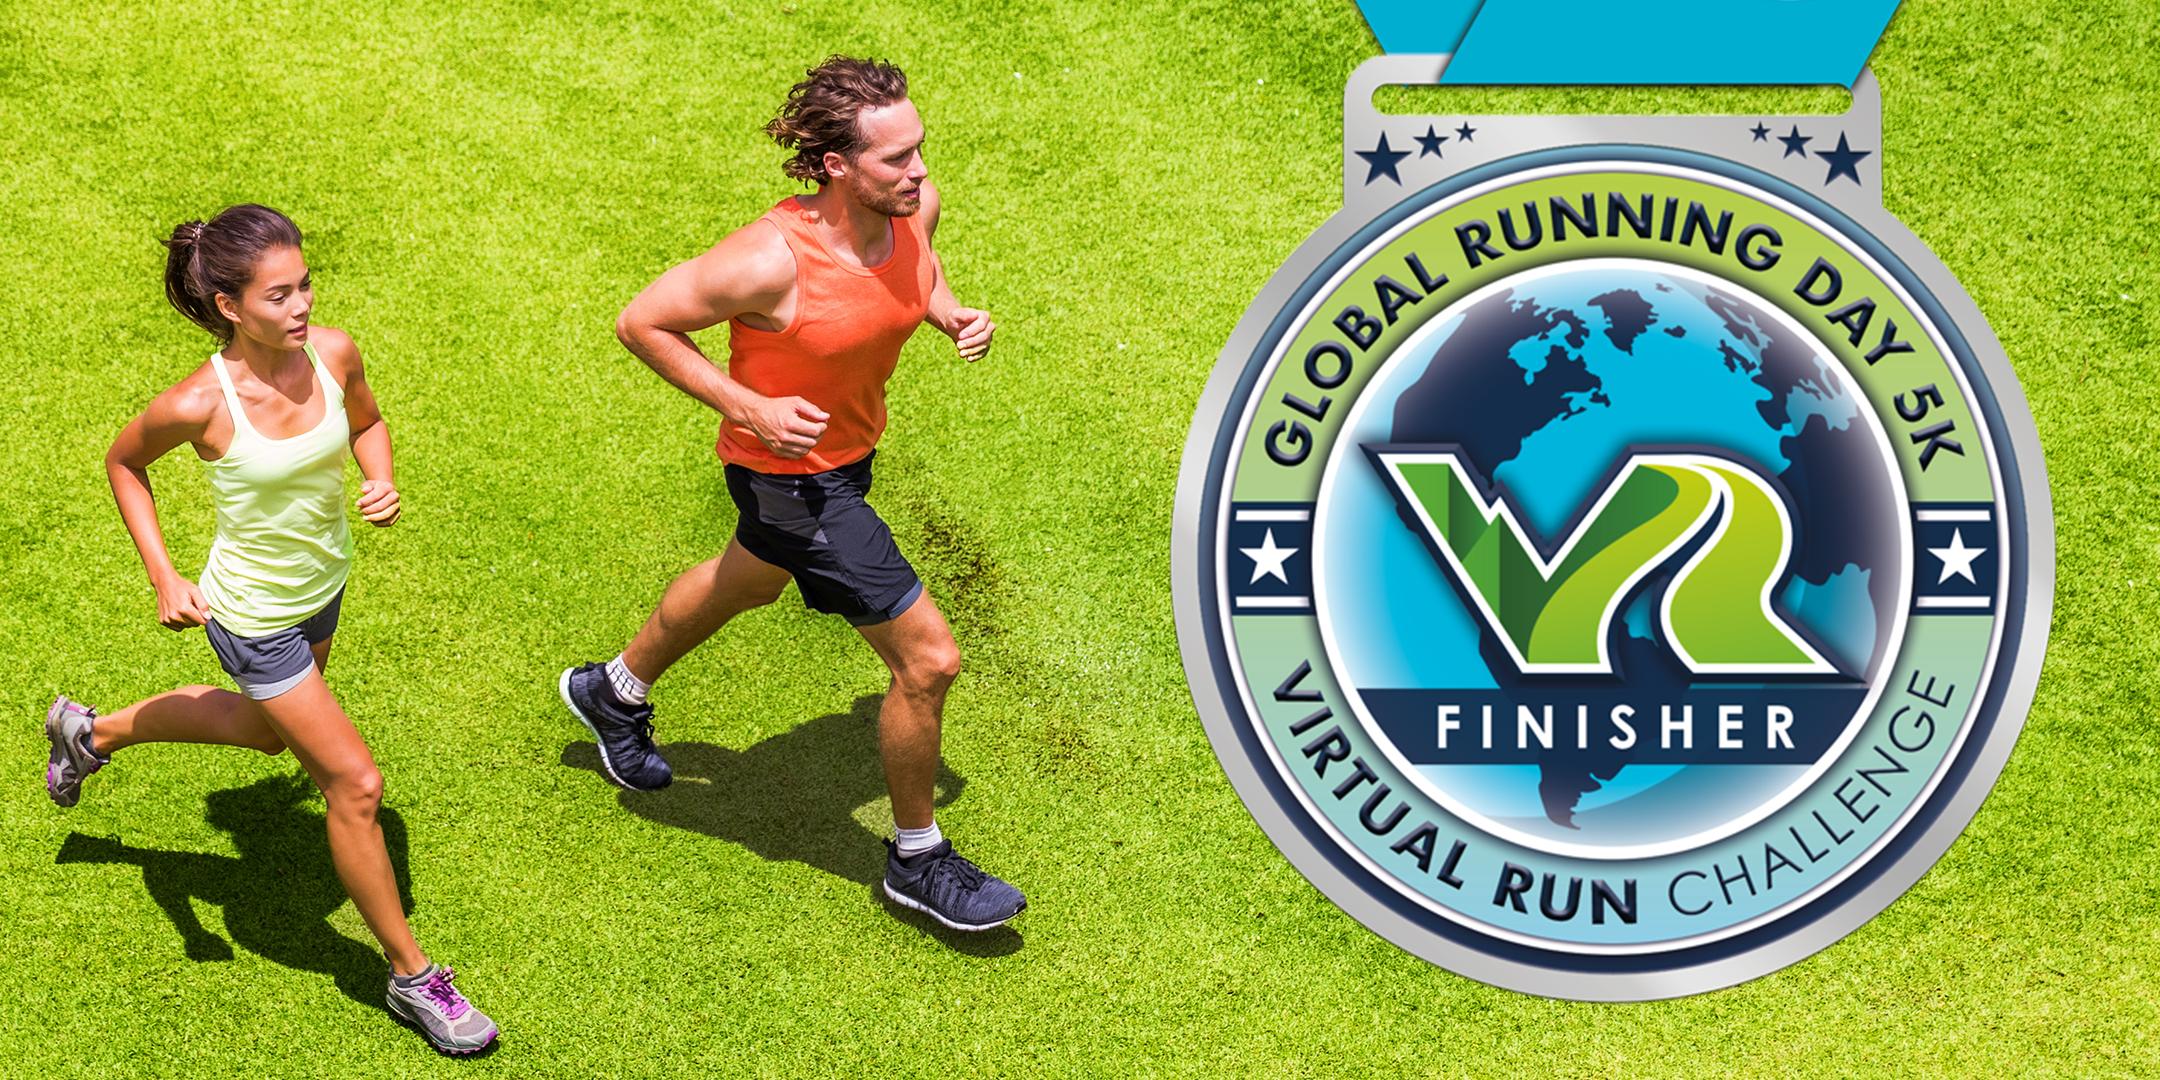 2020 Global Running Day Free Virtual 5k - Baltimore